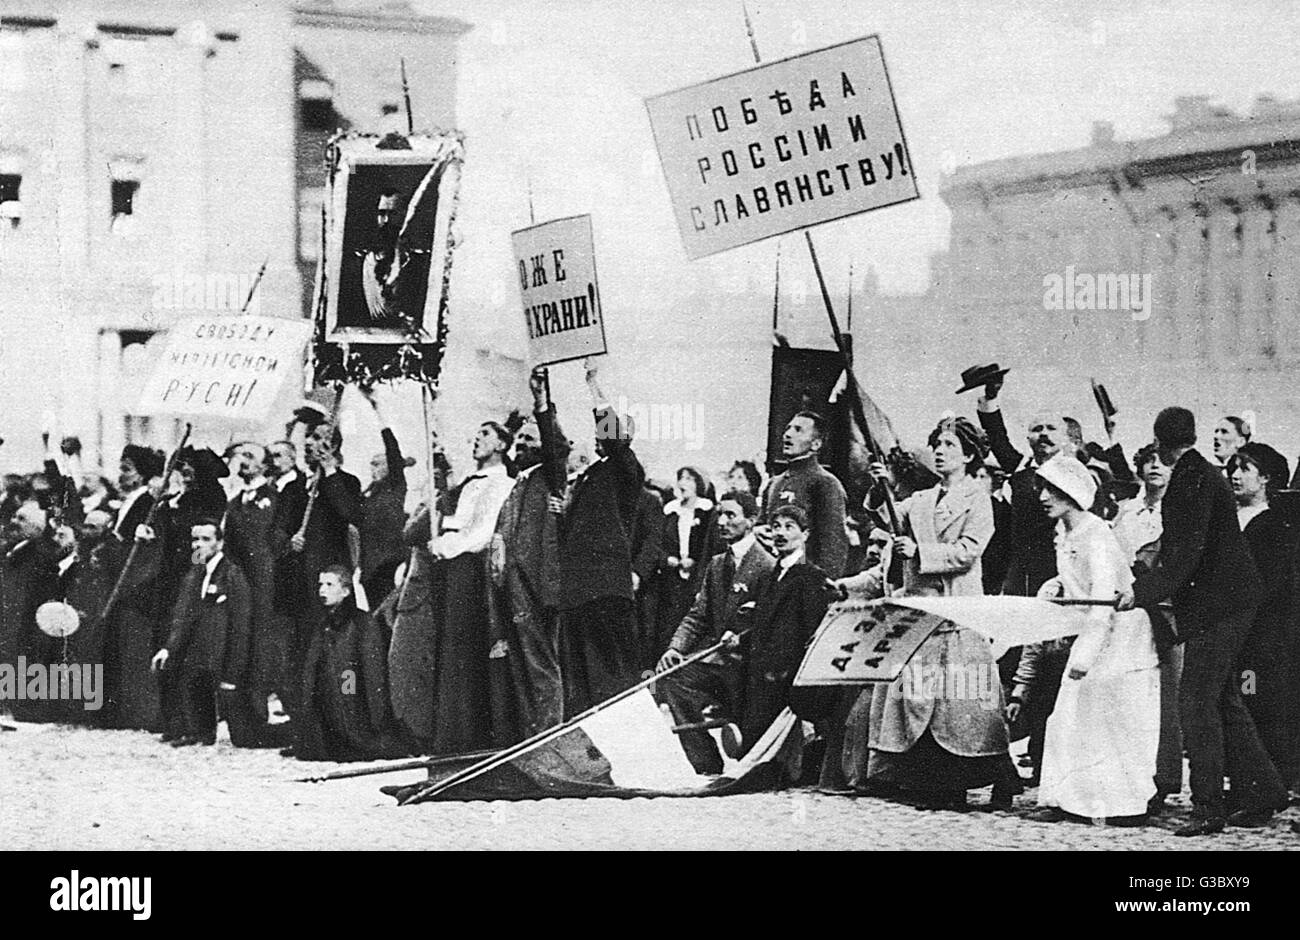 WW1 - patriotische Demonstrationen in Russland zur Unterstützung des Zaren und die Kriegsanstrengungen gegen Deutschland. Die Bildunterschrift besagt, dass Krieg "die ganze Bevölkerung Russlands geeint hat" - Dies war bei weitem nicht der Fall in den folgenden Monaten und Jahren zu beweisen...     Datum: Stockfoto